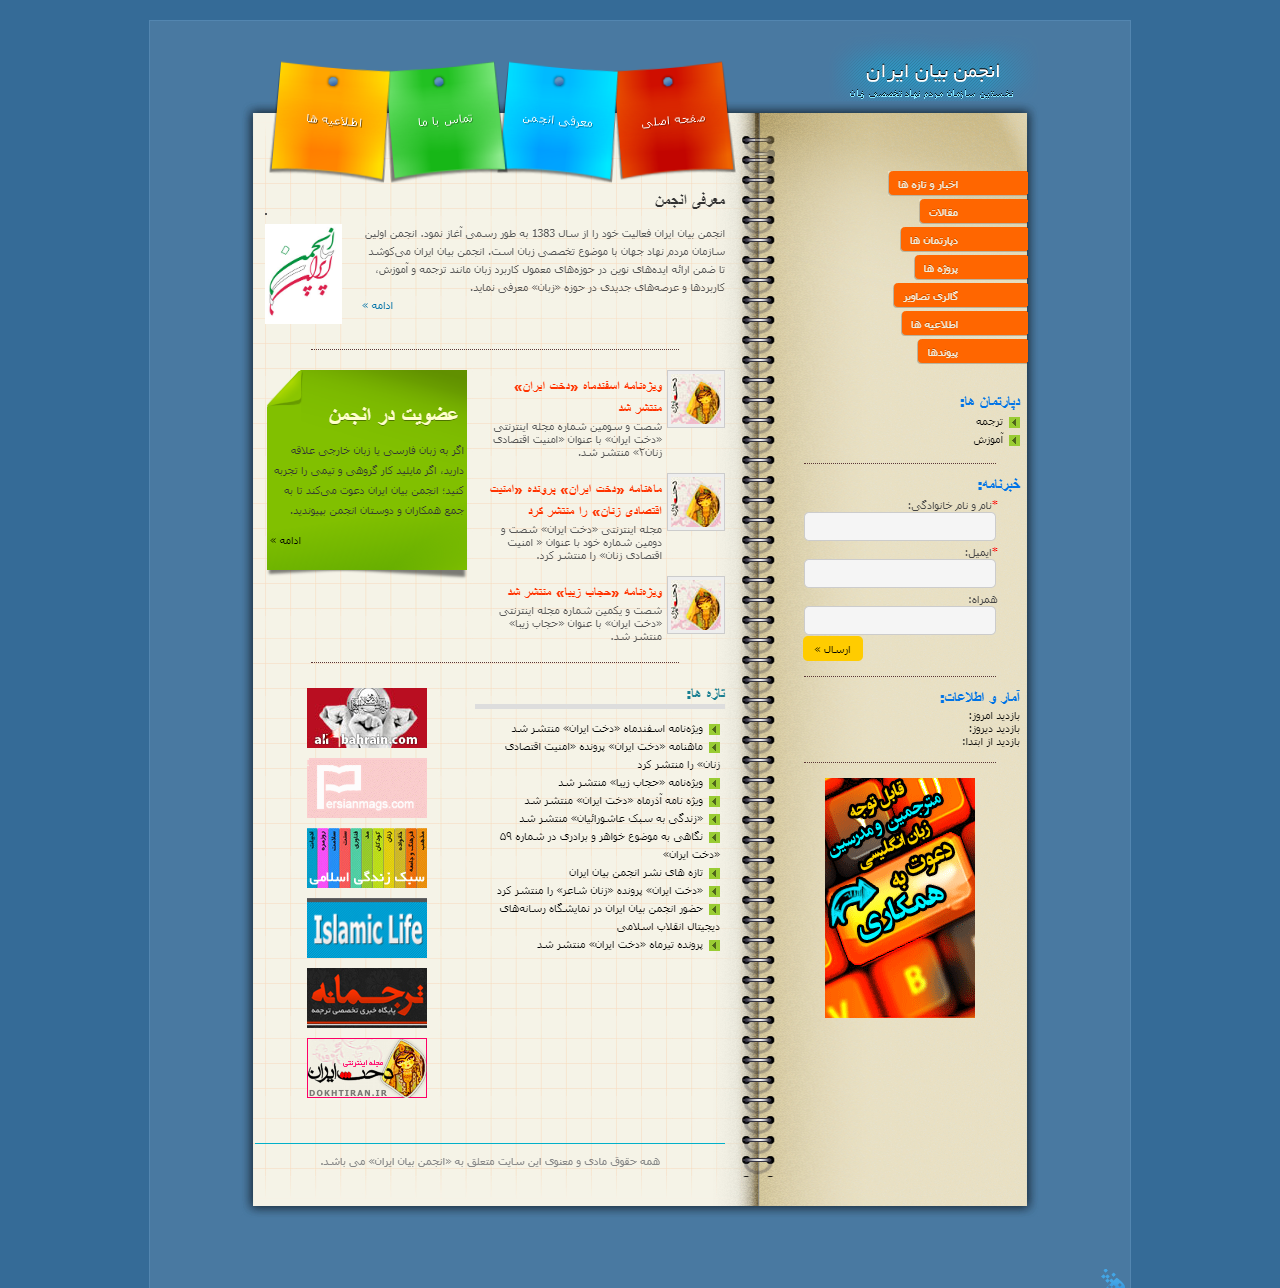 طراحی سایت انجمن بیان ایران